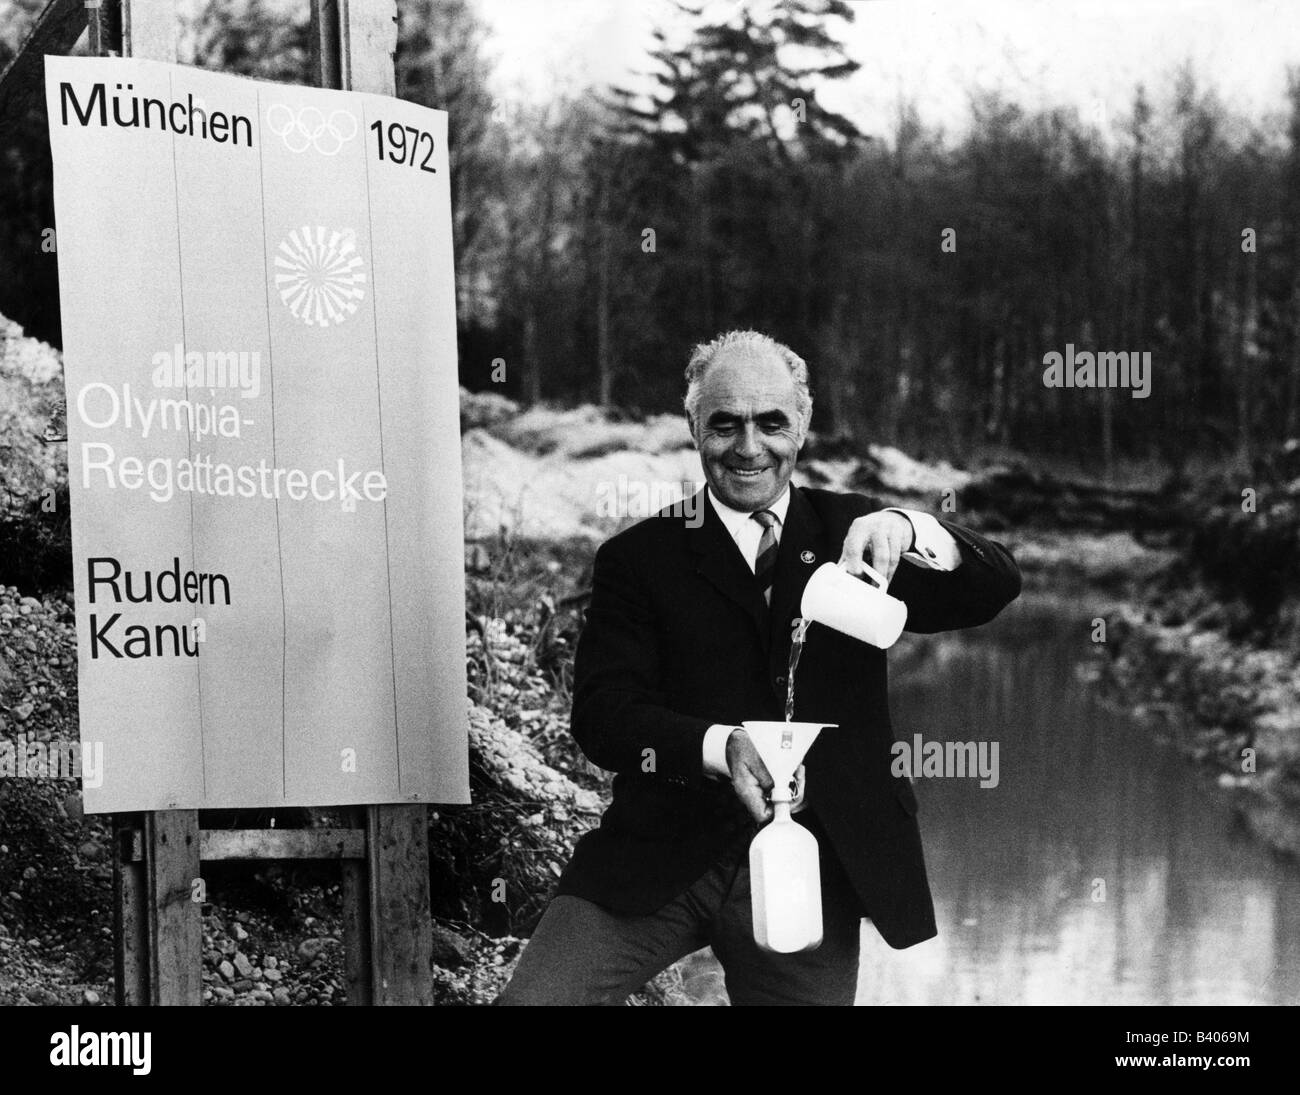 Soellner, Paul, 5.6.1911 - 8.4.1991, deutscher Sportler (Rudern), nimmt Wasser von der olympischen Regattastrecke zur Taufe eines Reihenboots in Kansas, München, November 1969, Stockfoto